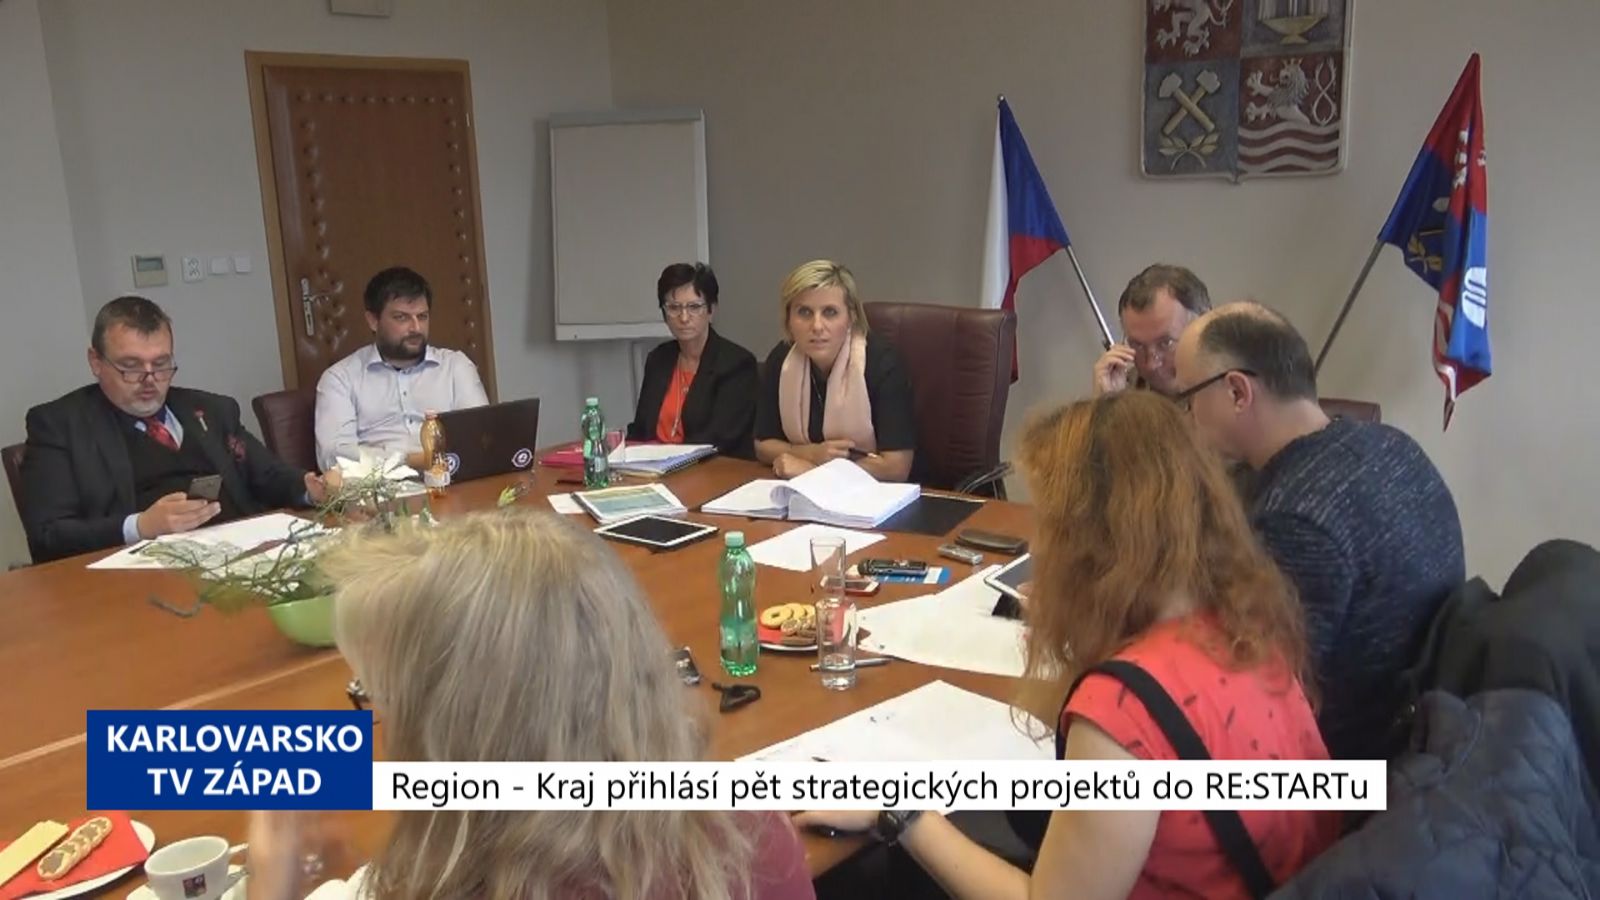 Region: Kraj přihlásí 5 strategických projektů do RE:STARTu (TV Západ)